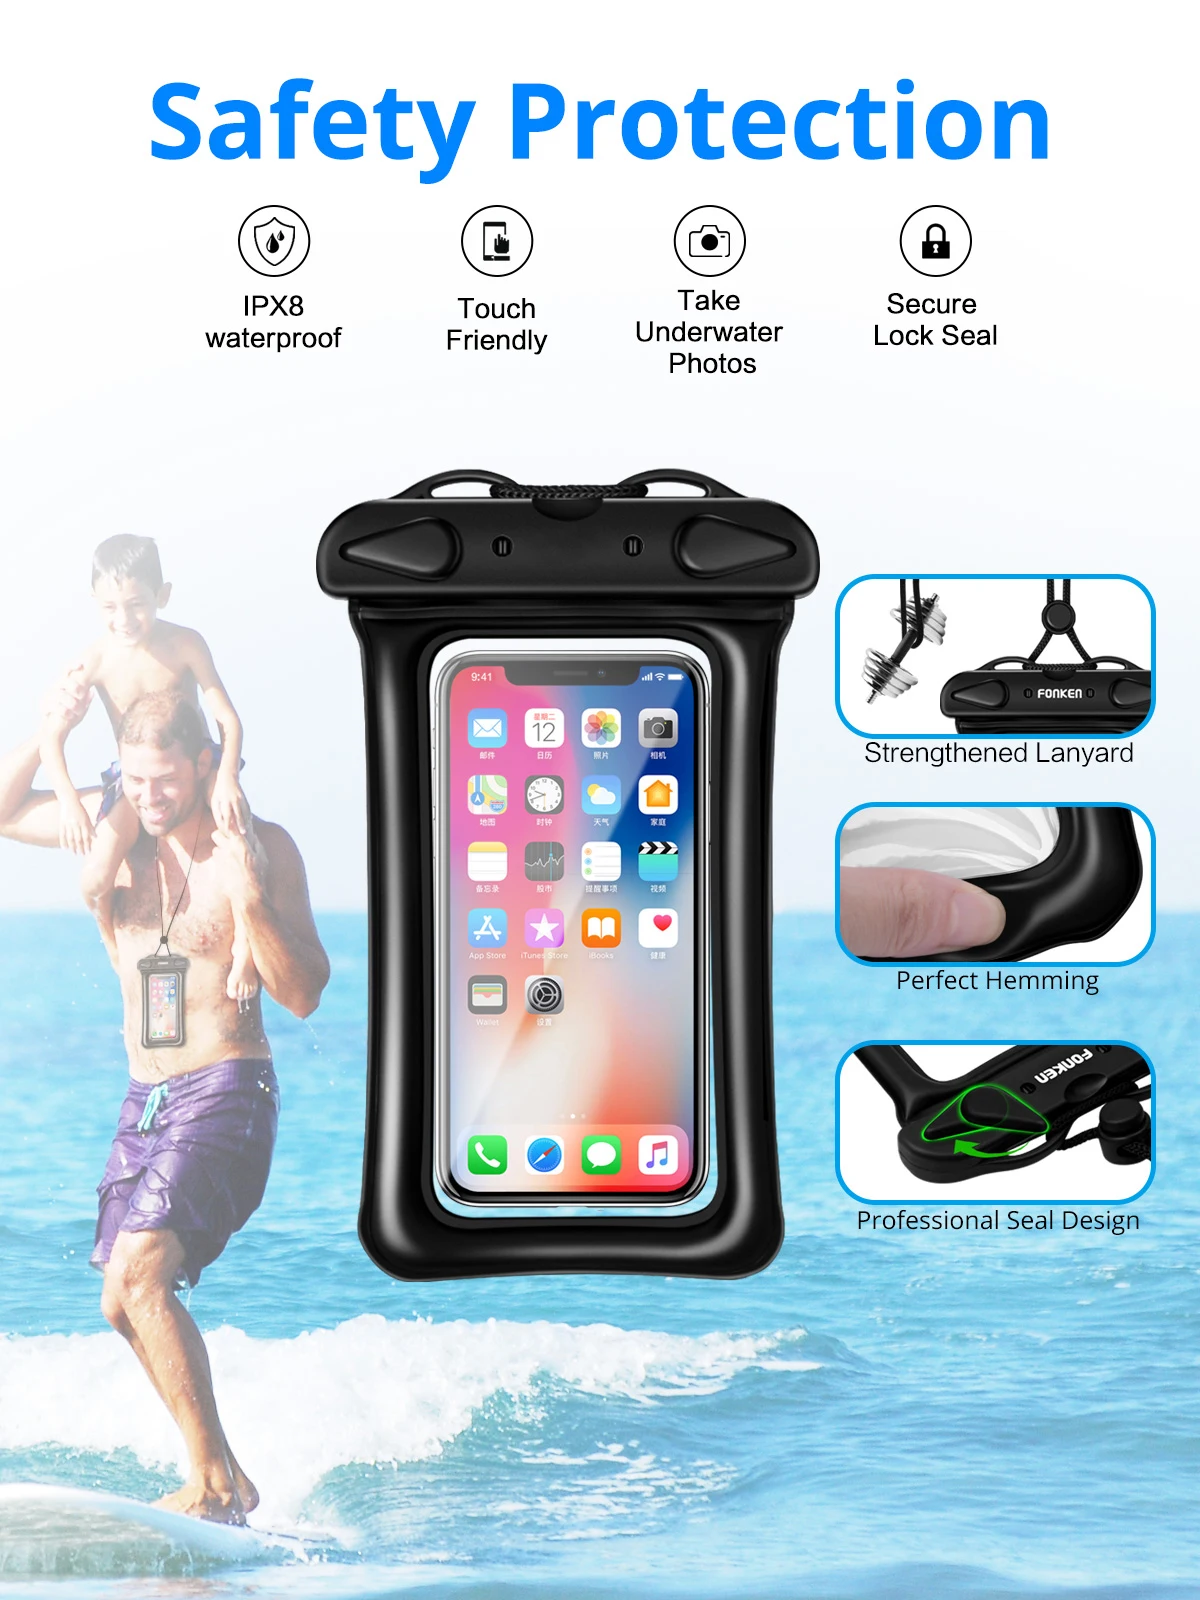 Ankndo 2 шт. водонепроницаемый чехол для телефона, плавающий чехол, сумка для смартфонов, защитный чехол для телефона для плавания, подводный чехол для телефона